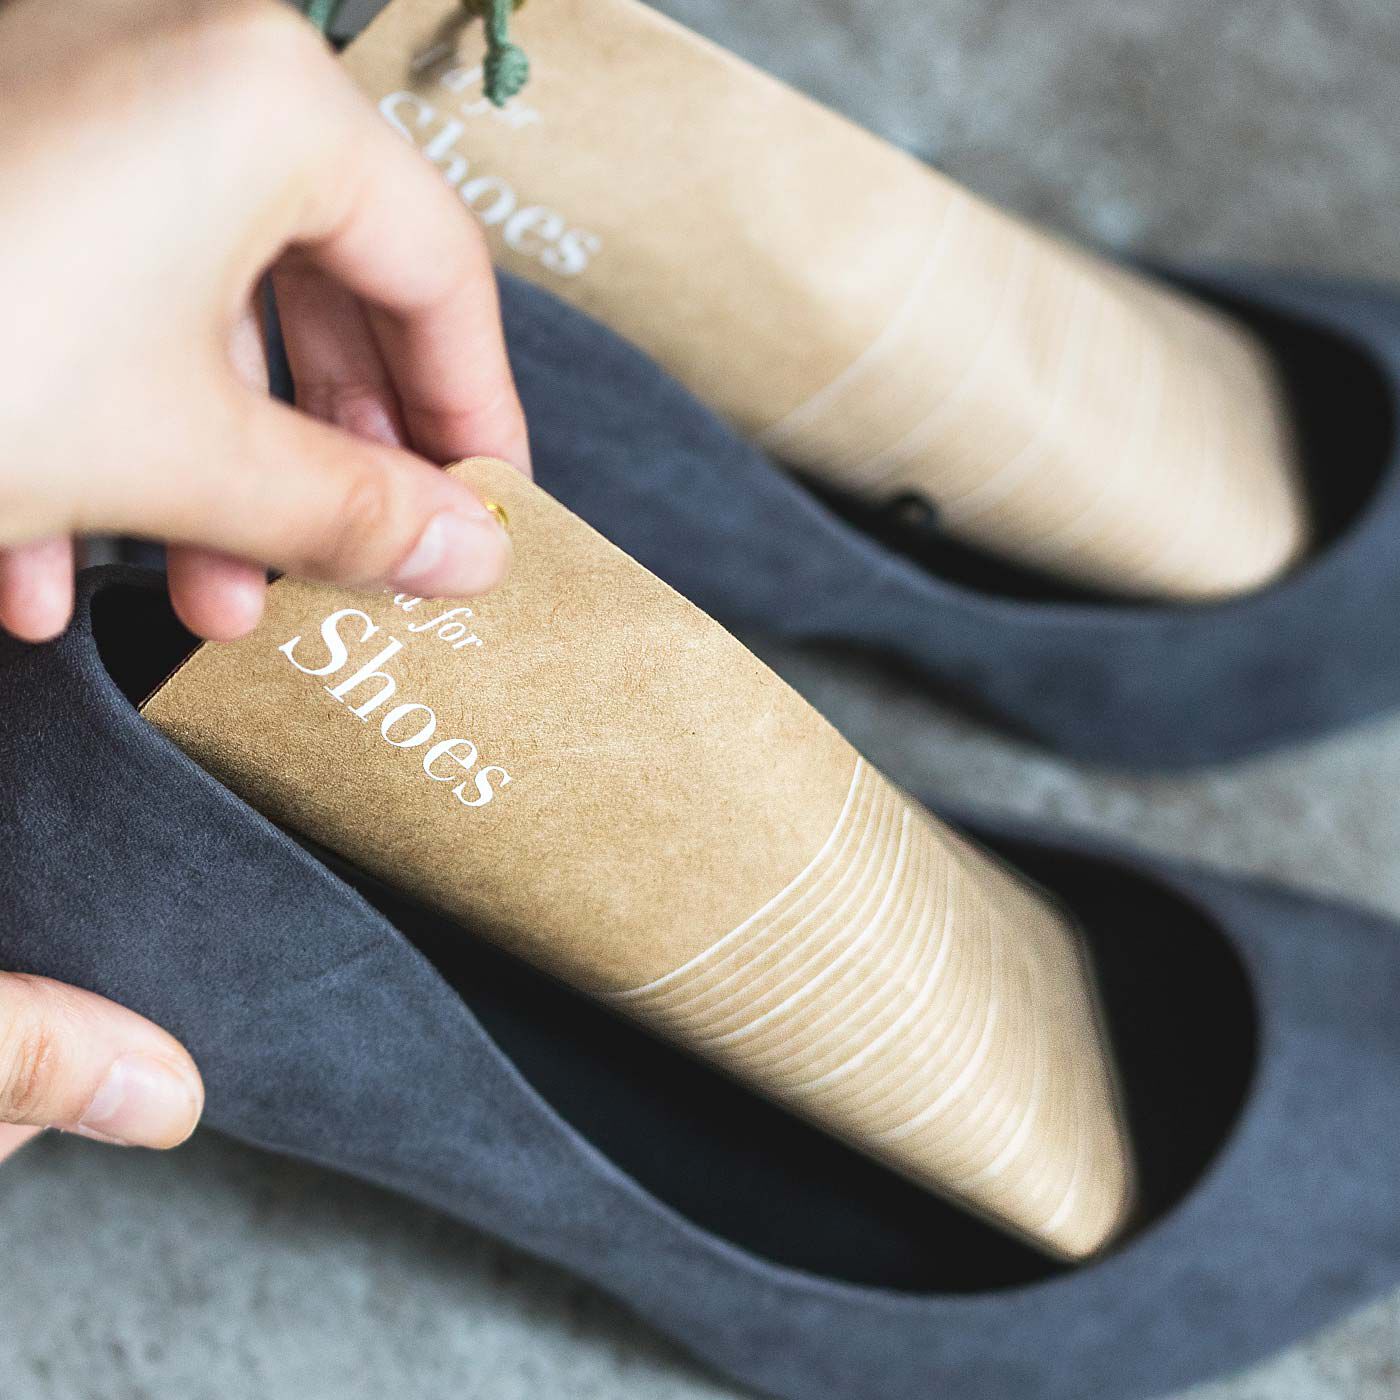 フェリシモの雑貨 Kraso|1/d for Shoes 靴用除湿剤の会|差し込むだけで湿気を吸収。ひも付きだから、ブーツに差しても取り出しスムーズ。